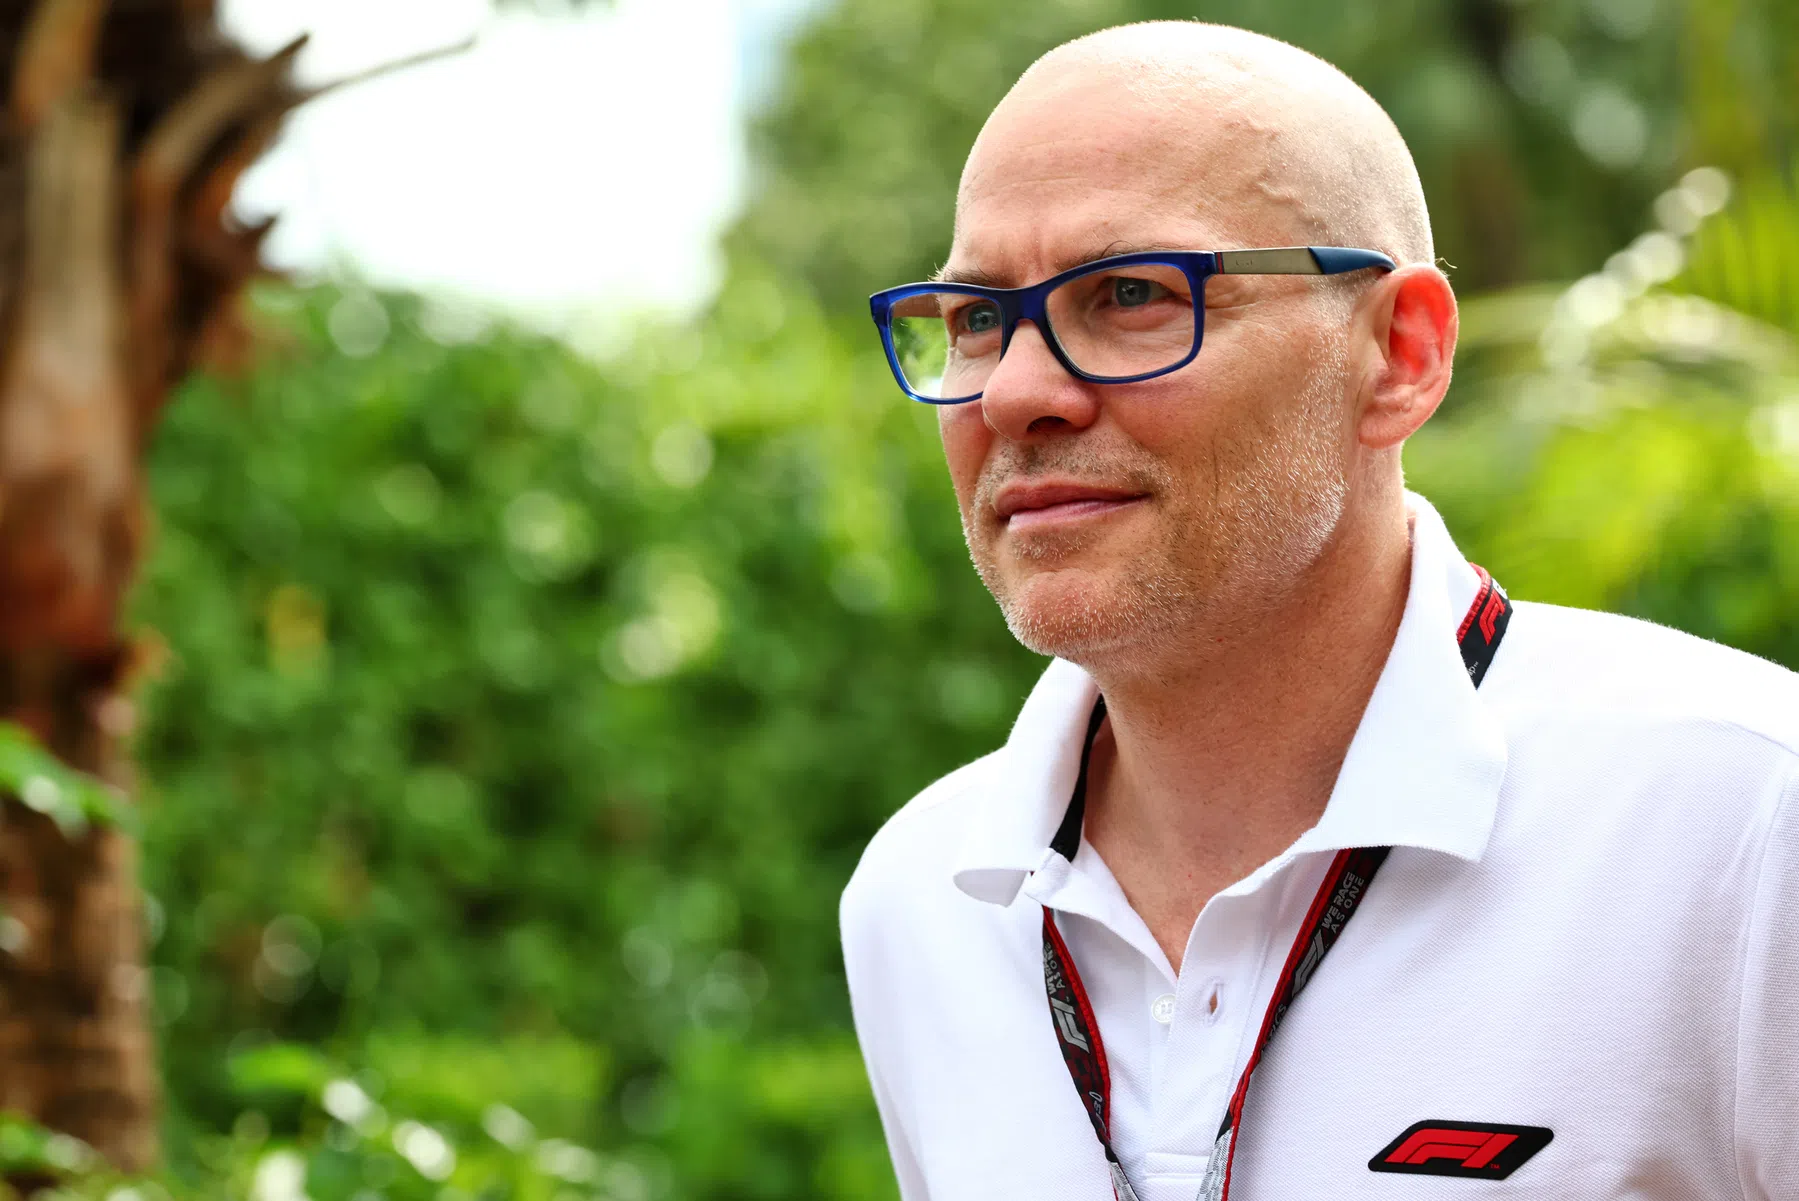 F1 world champion Jacques Villeneuve believes Sainz kicked out of Ferrari